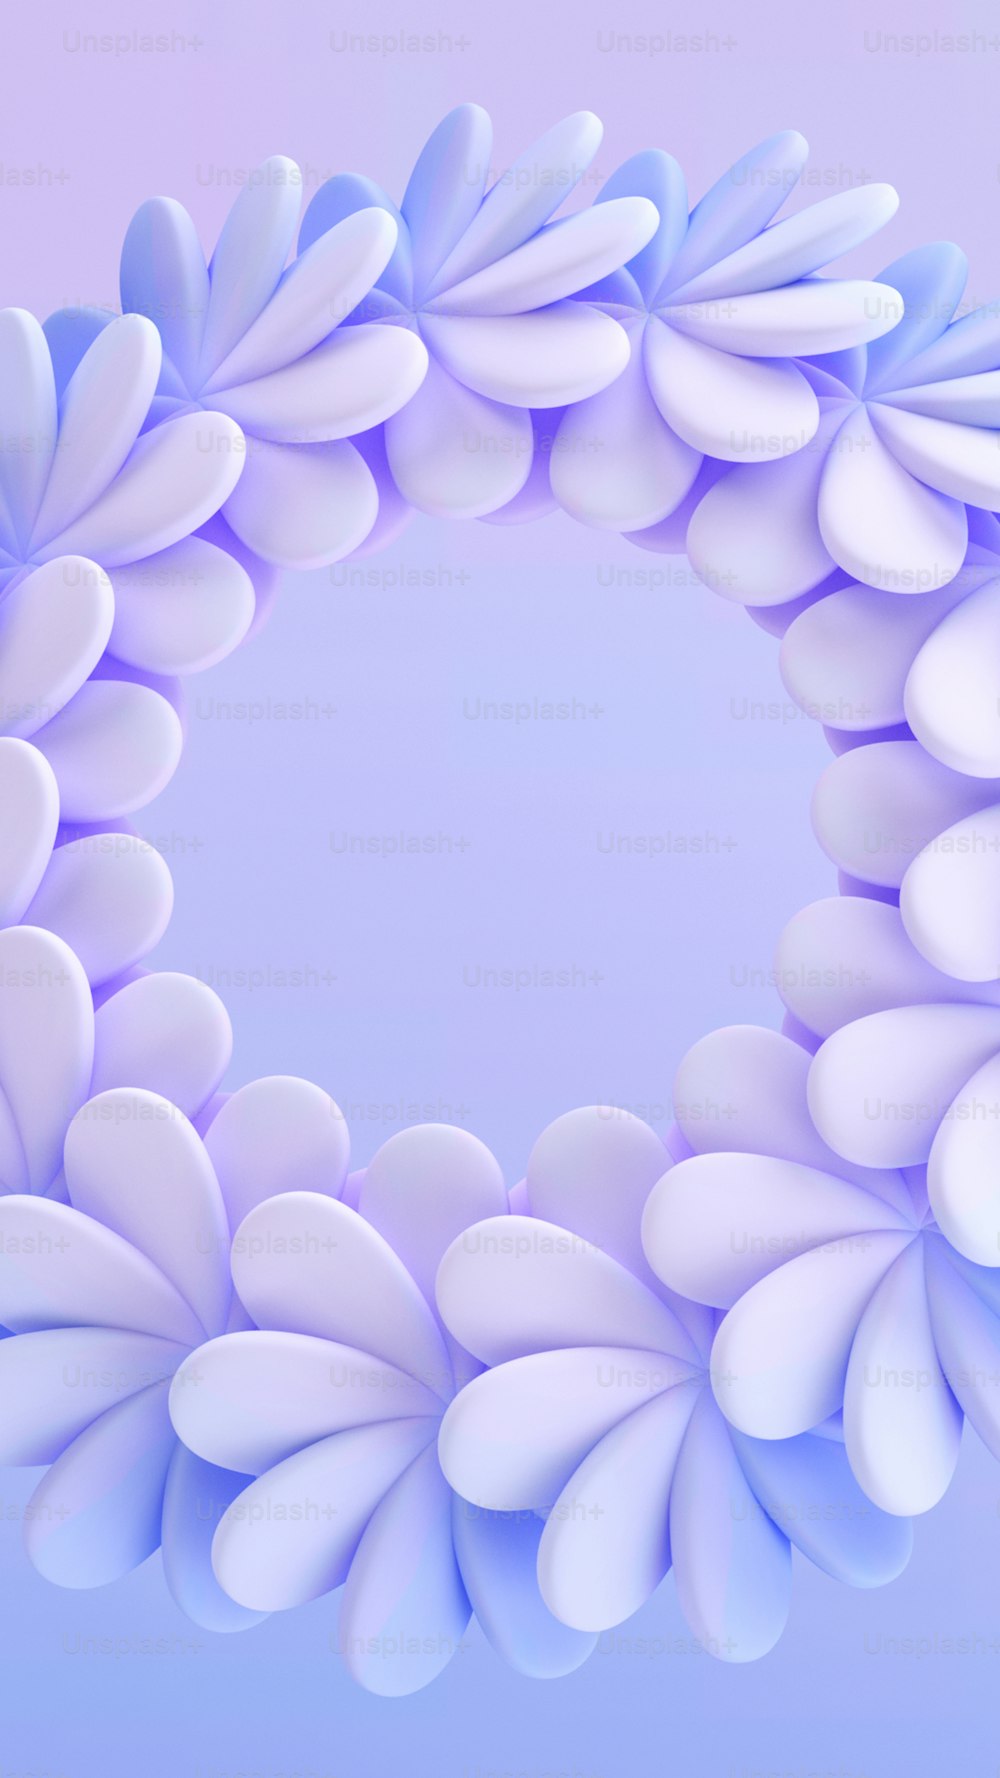 um objeto circular azul e branco com pétalas brancas